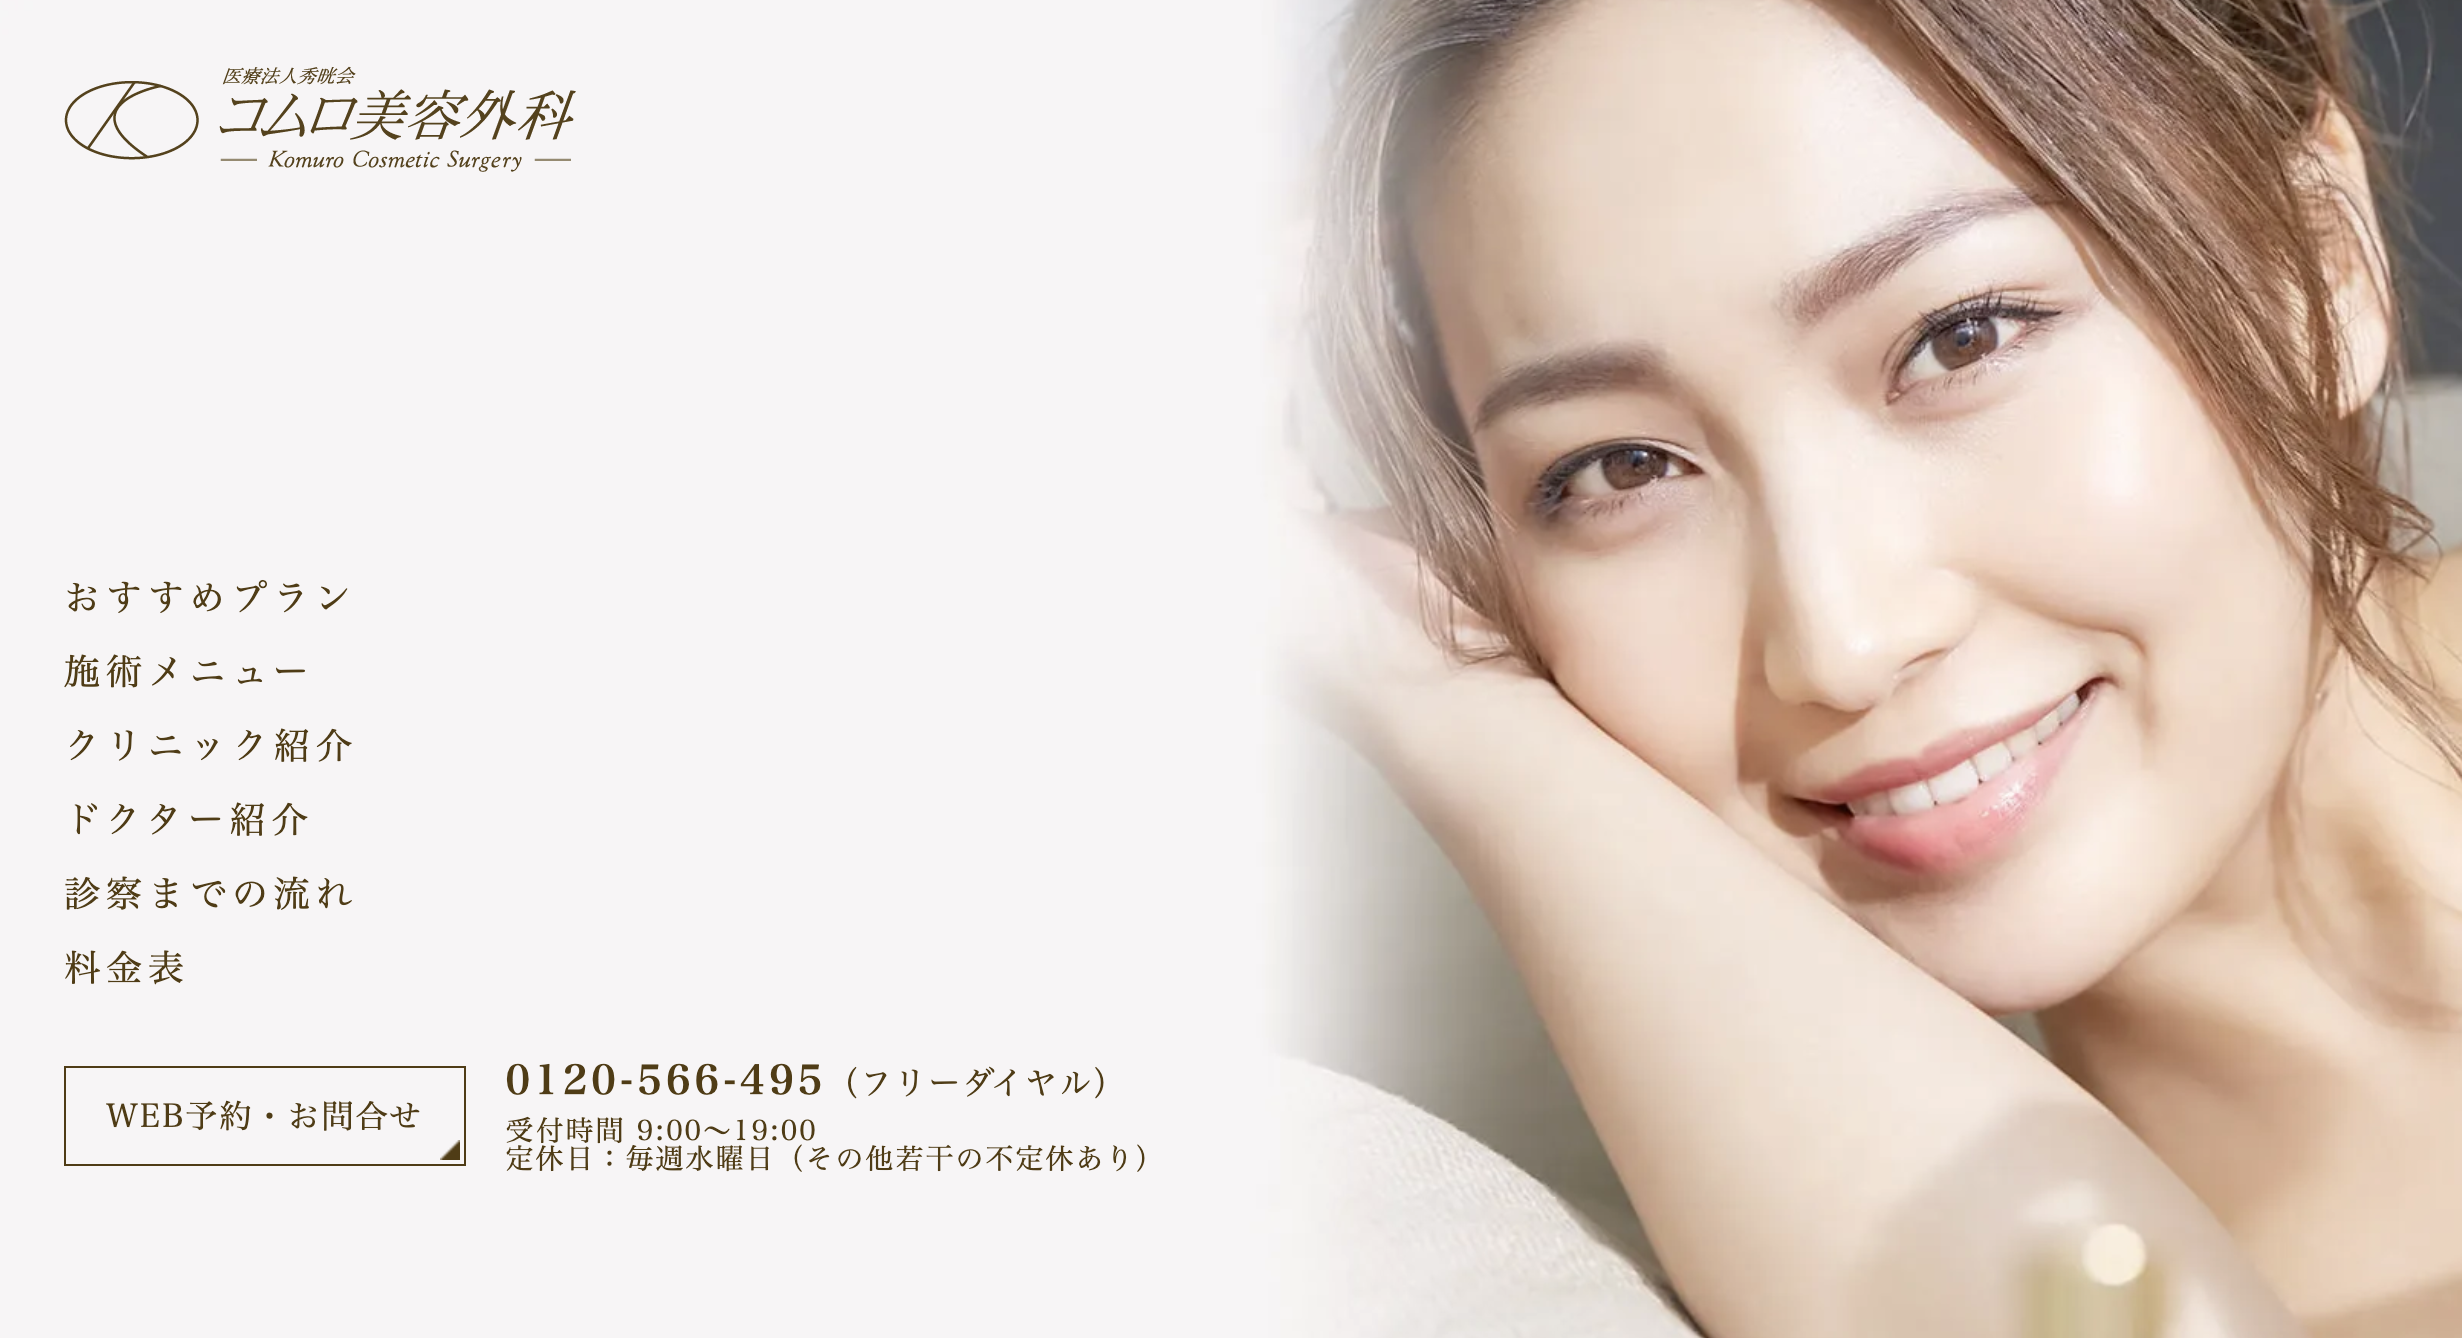 大阪府で評判の鼻整形におすすめのクリニック 上手い 名医 ランキング コムロ美容外科